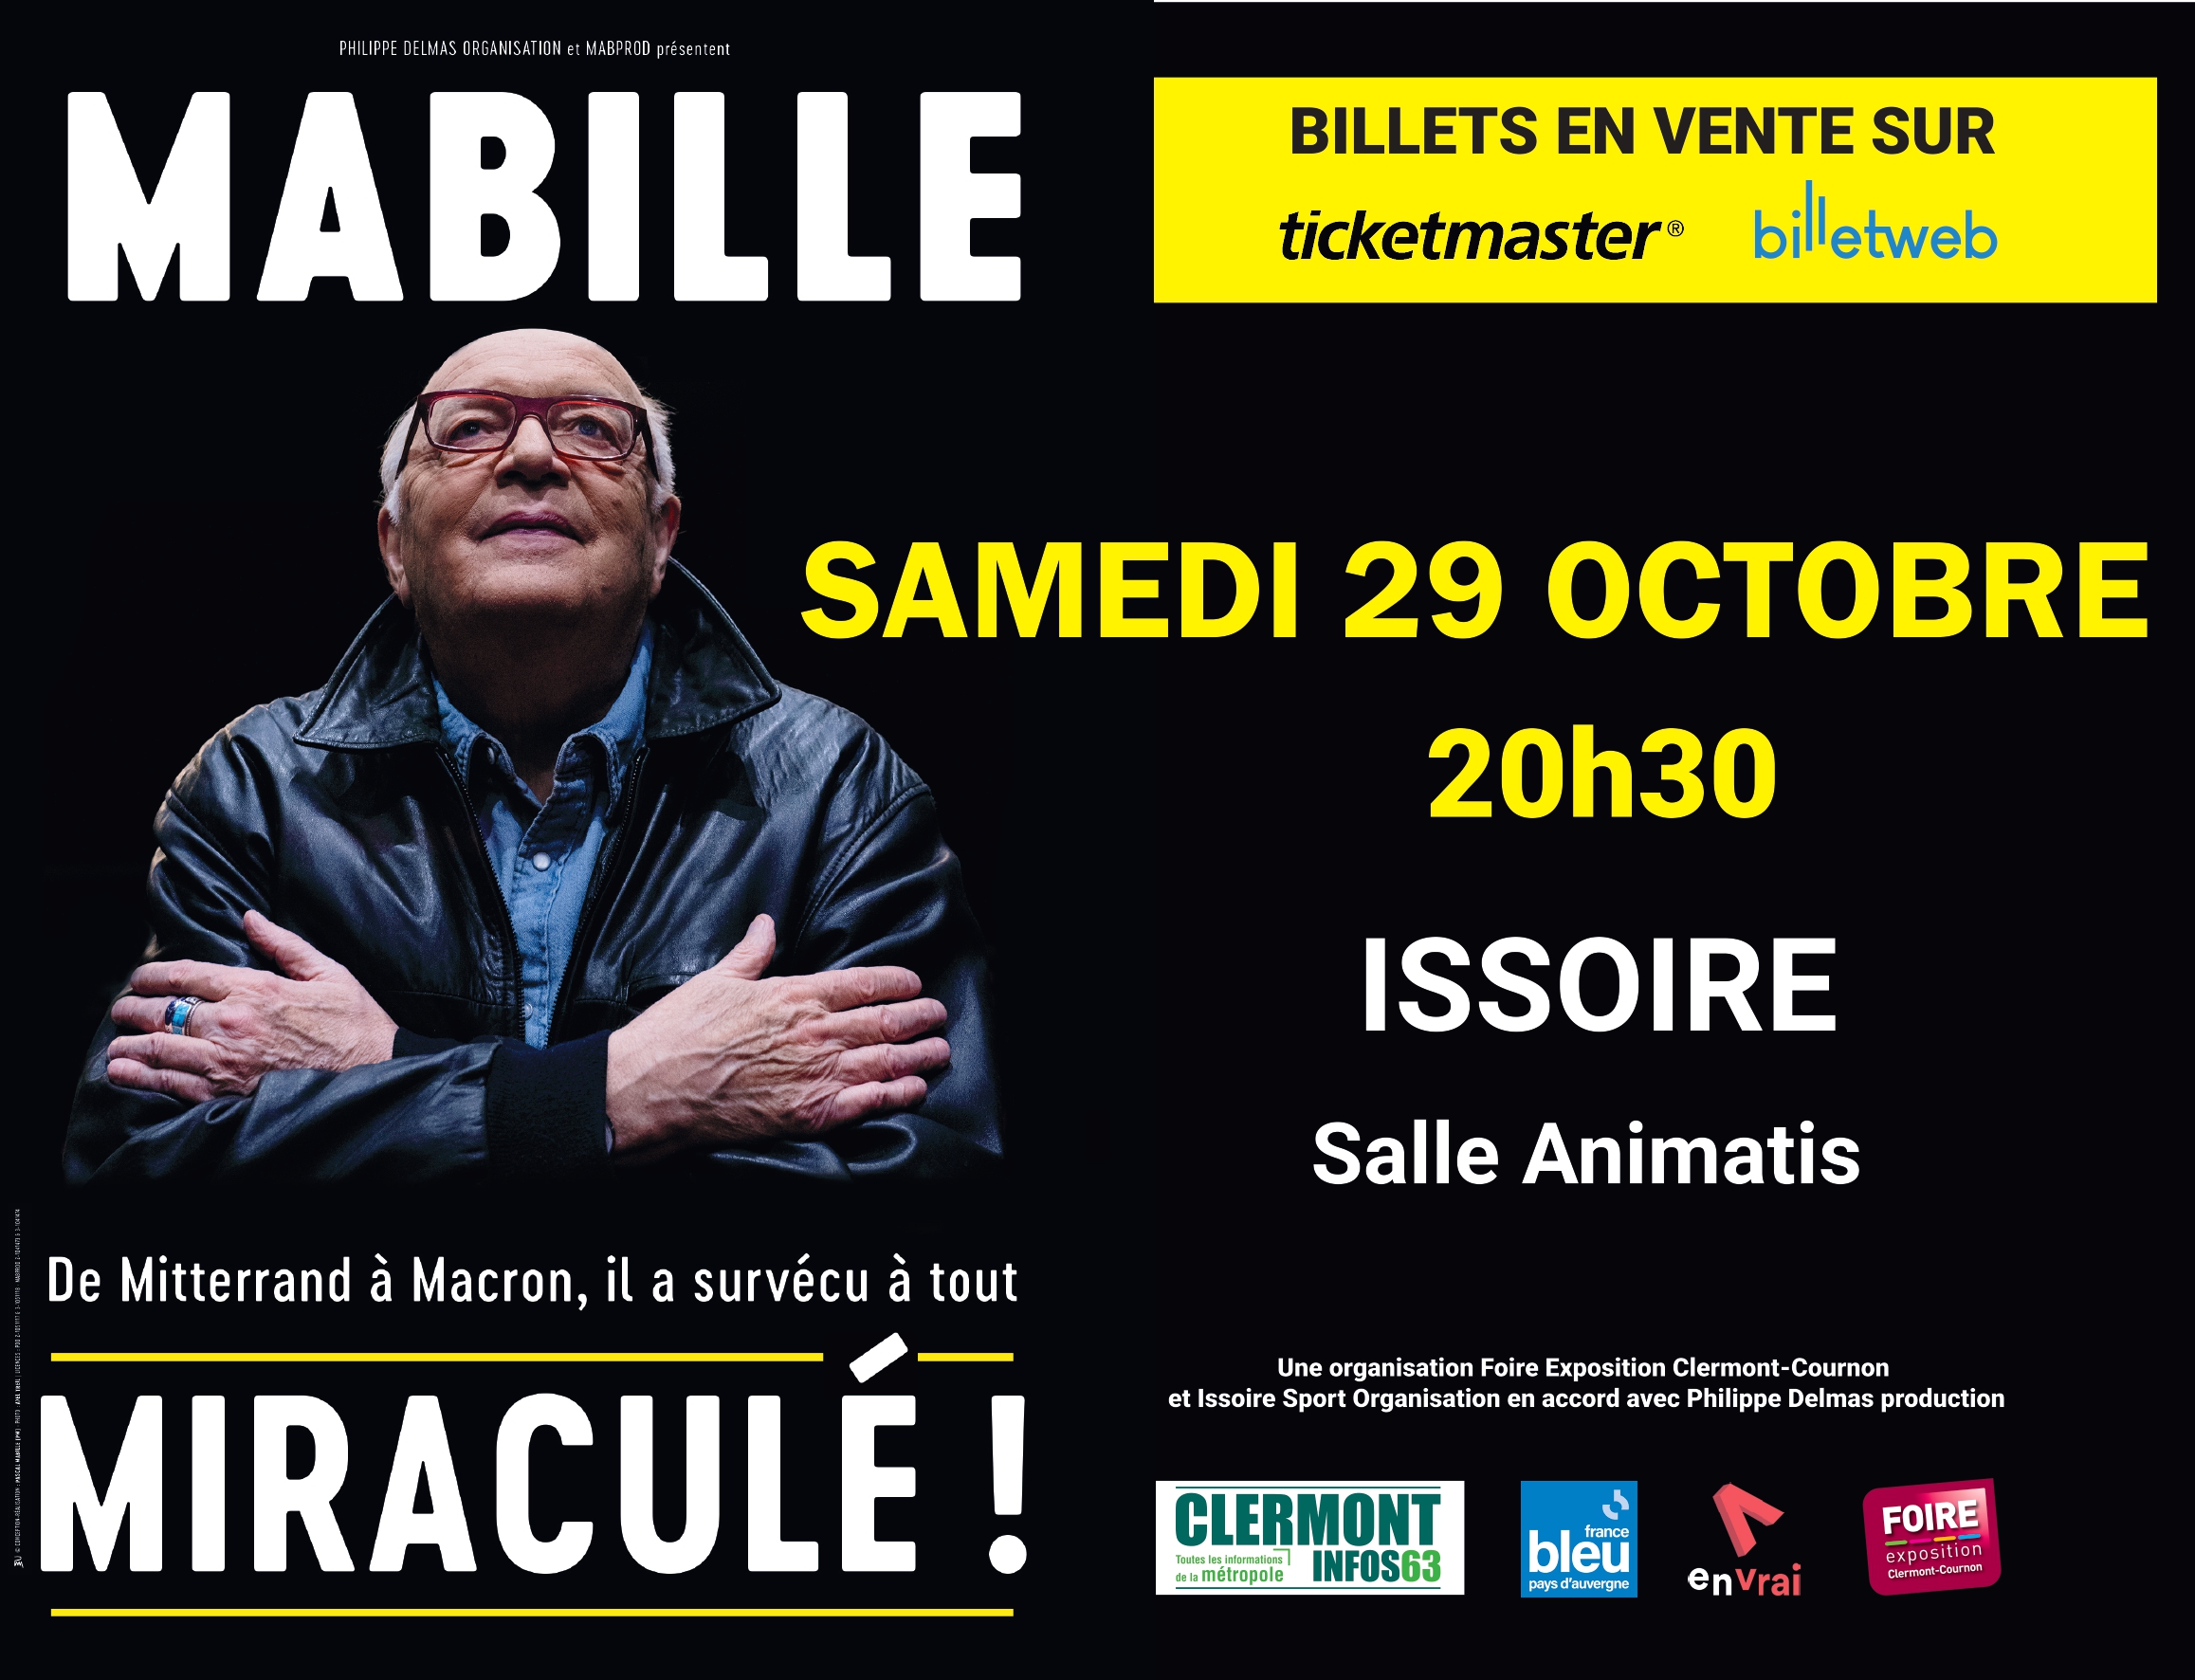 Bernard Mabille le 29 octobre Salle Animatis à Issoire